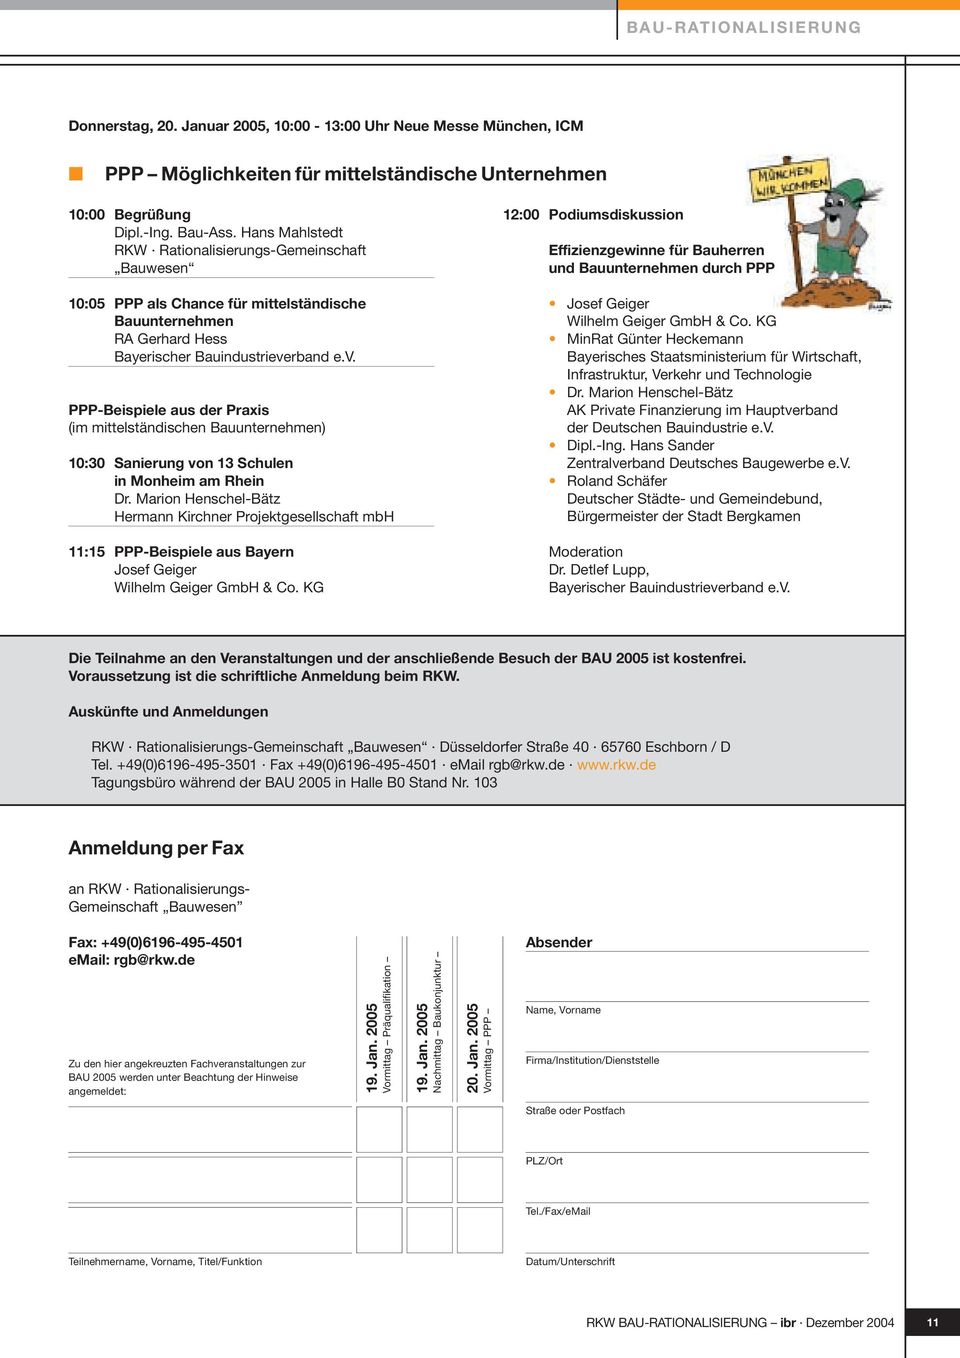 rband e.v. PPP-Beispiele aus der Praxis (im mittelständischen Bauunternehmen) 10:30 Sanierung von 13 Schulen in Monheim am Rhein Dr.